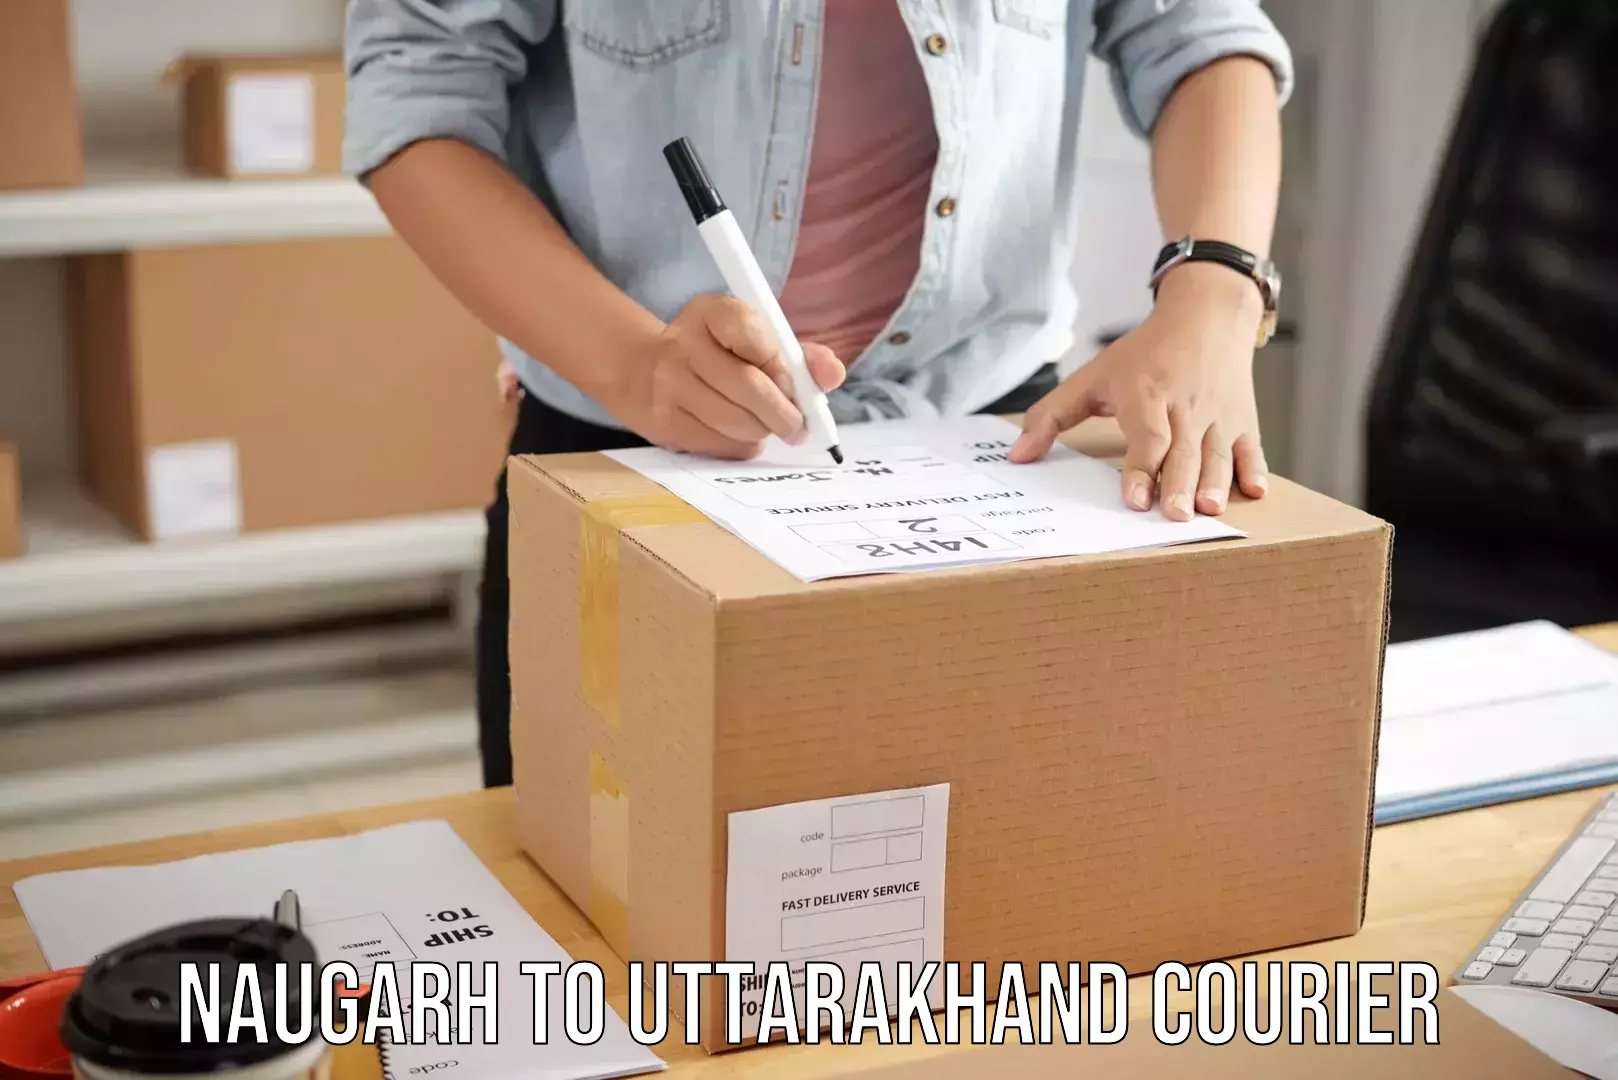 Luggage shipment processing Naugarh to Uttarakhand